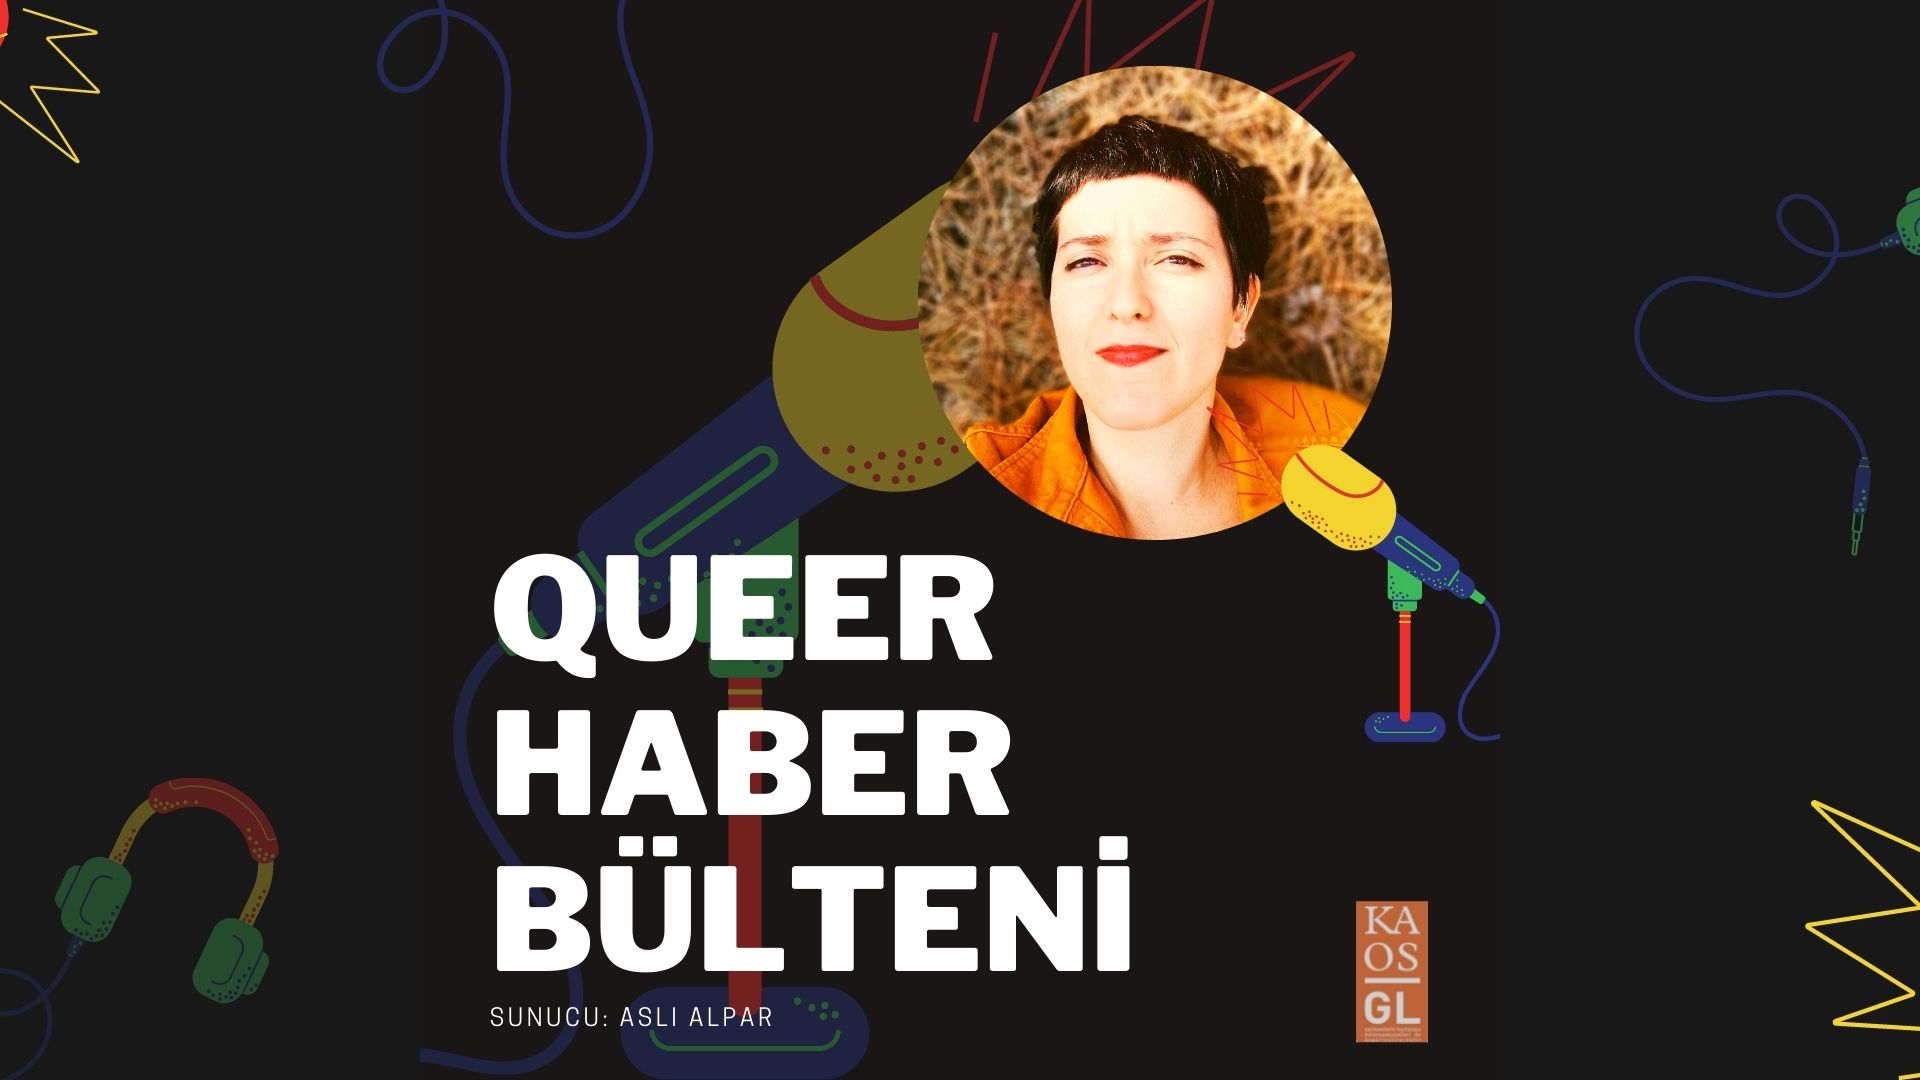 Podcast: Aralık ayı Queer Haber Bülteni Kaos GL - LGBTİ+ Haber Portalı